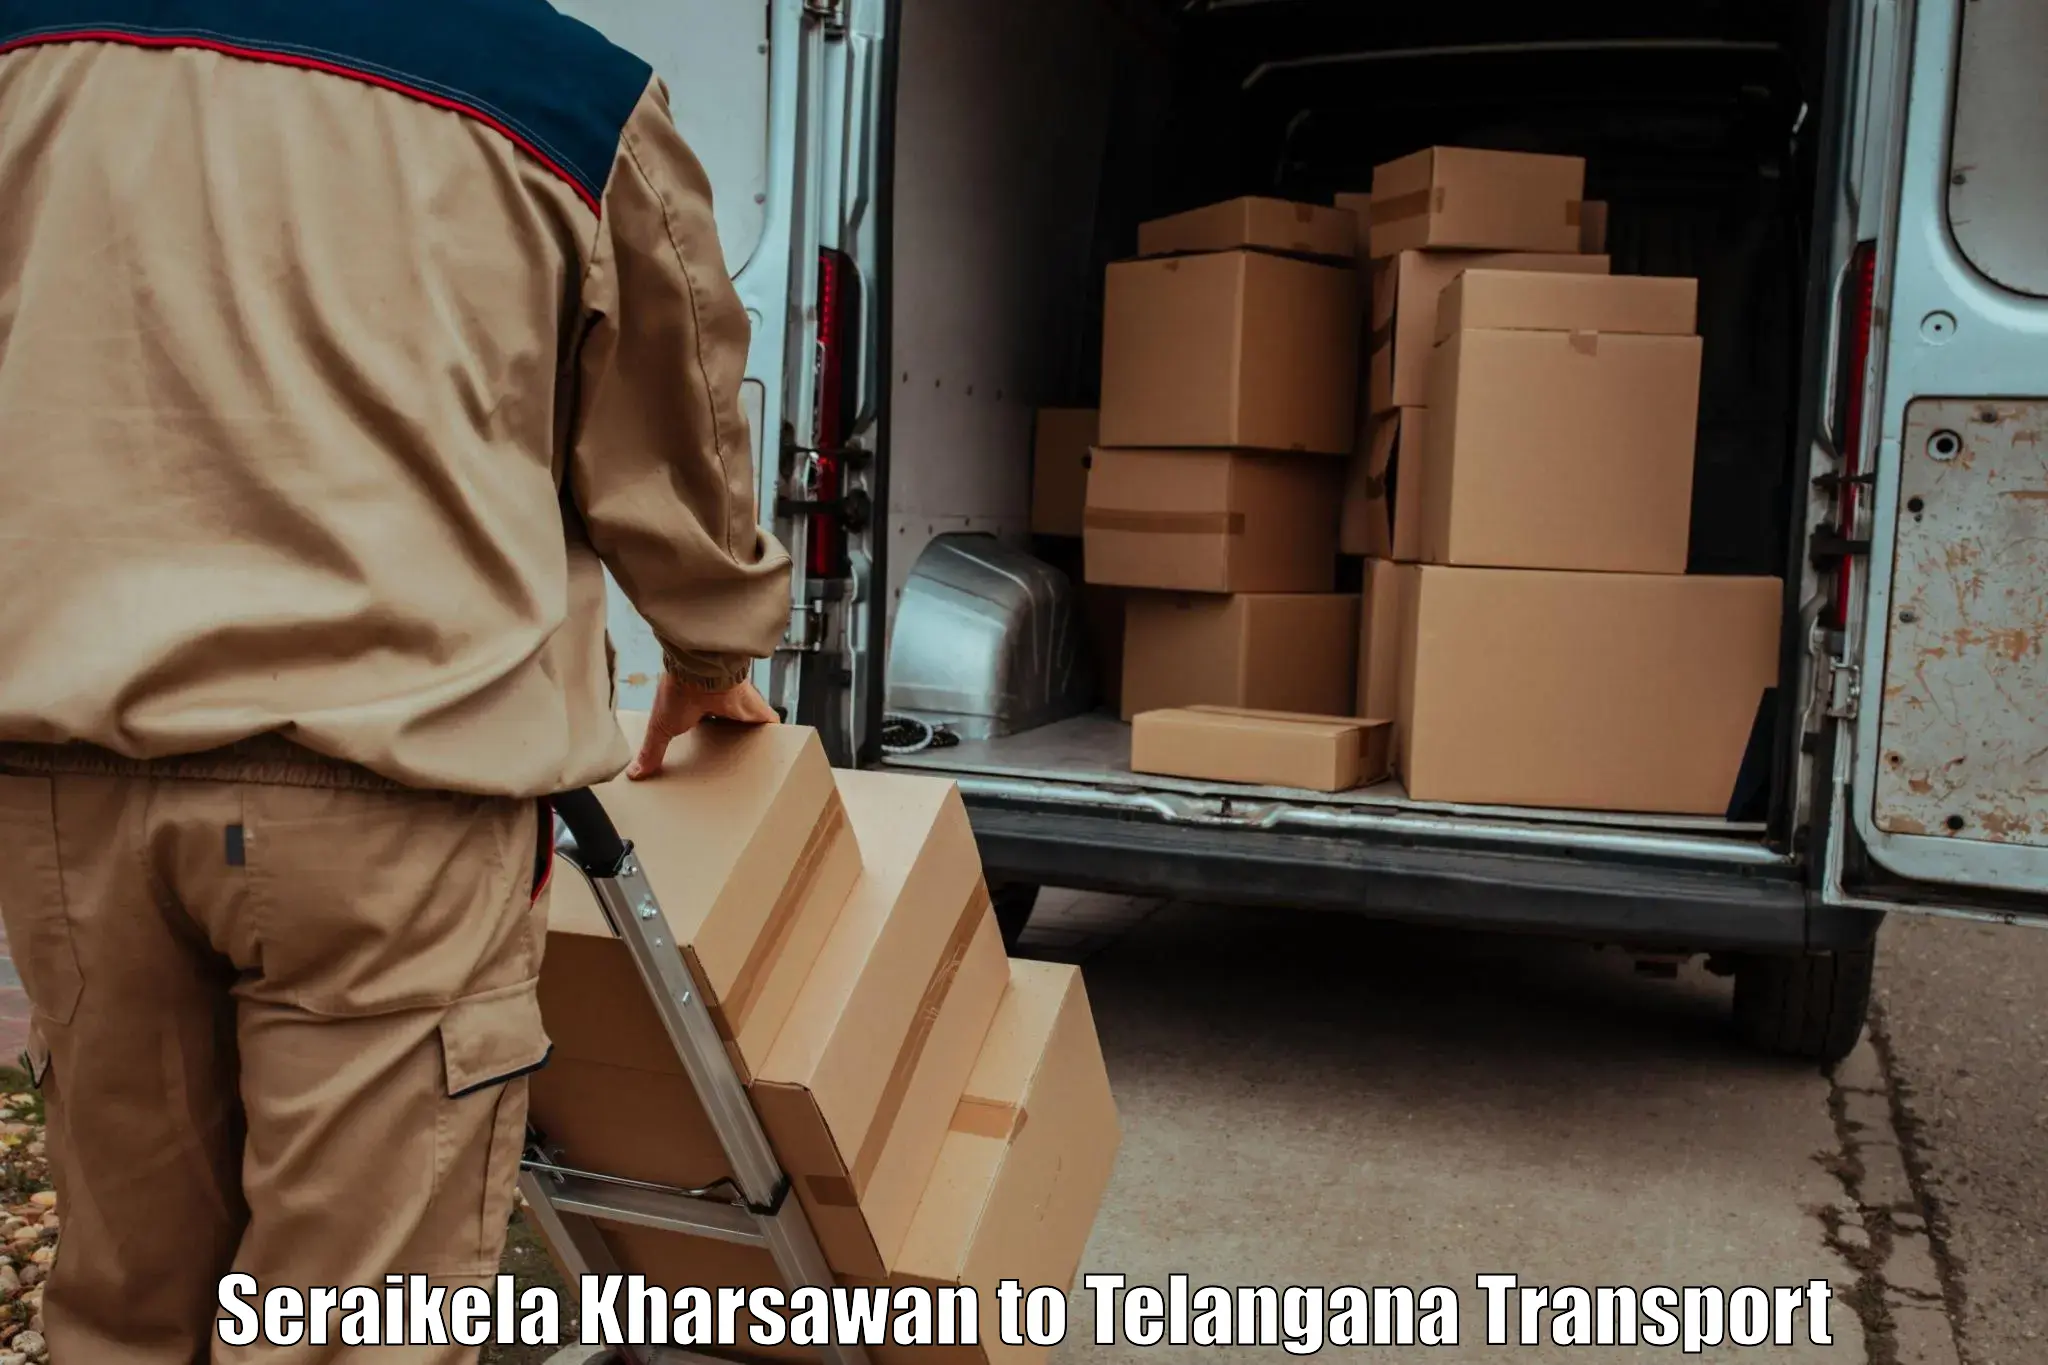 Container transport service Seraikela Kharsawan to Bhadrachalam